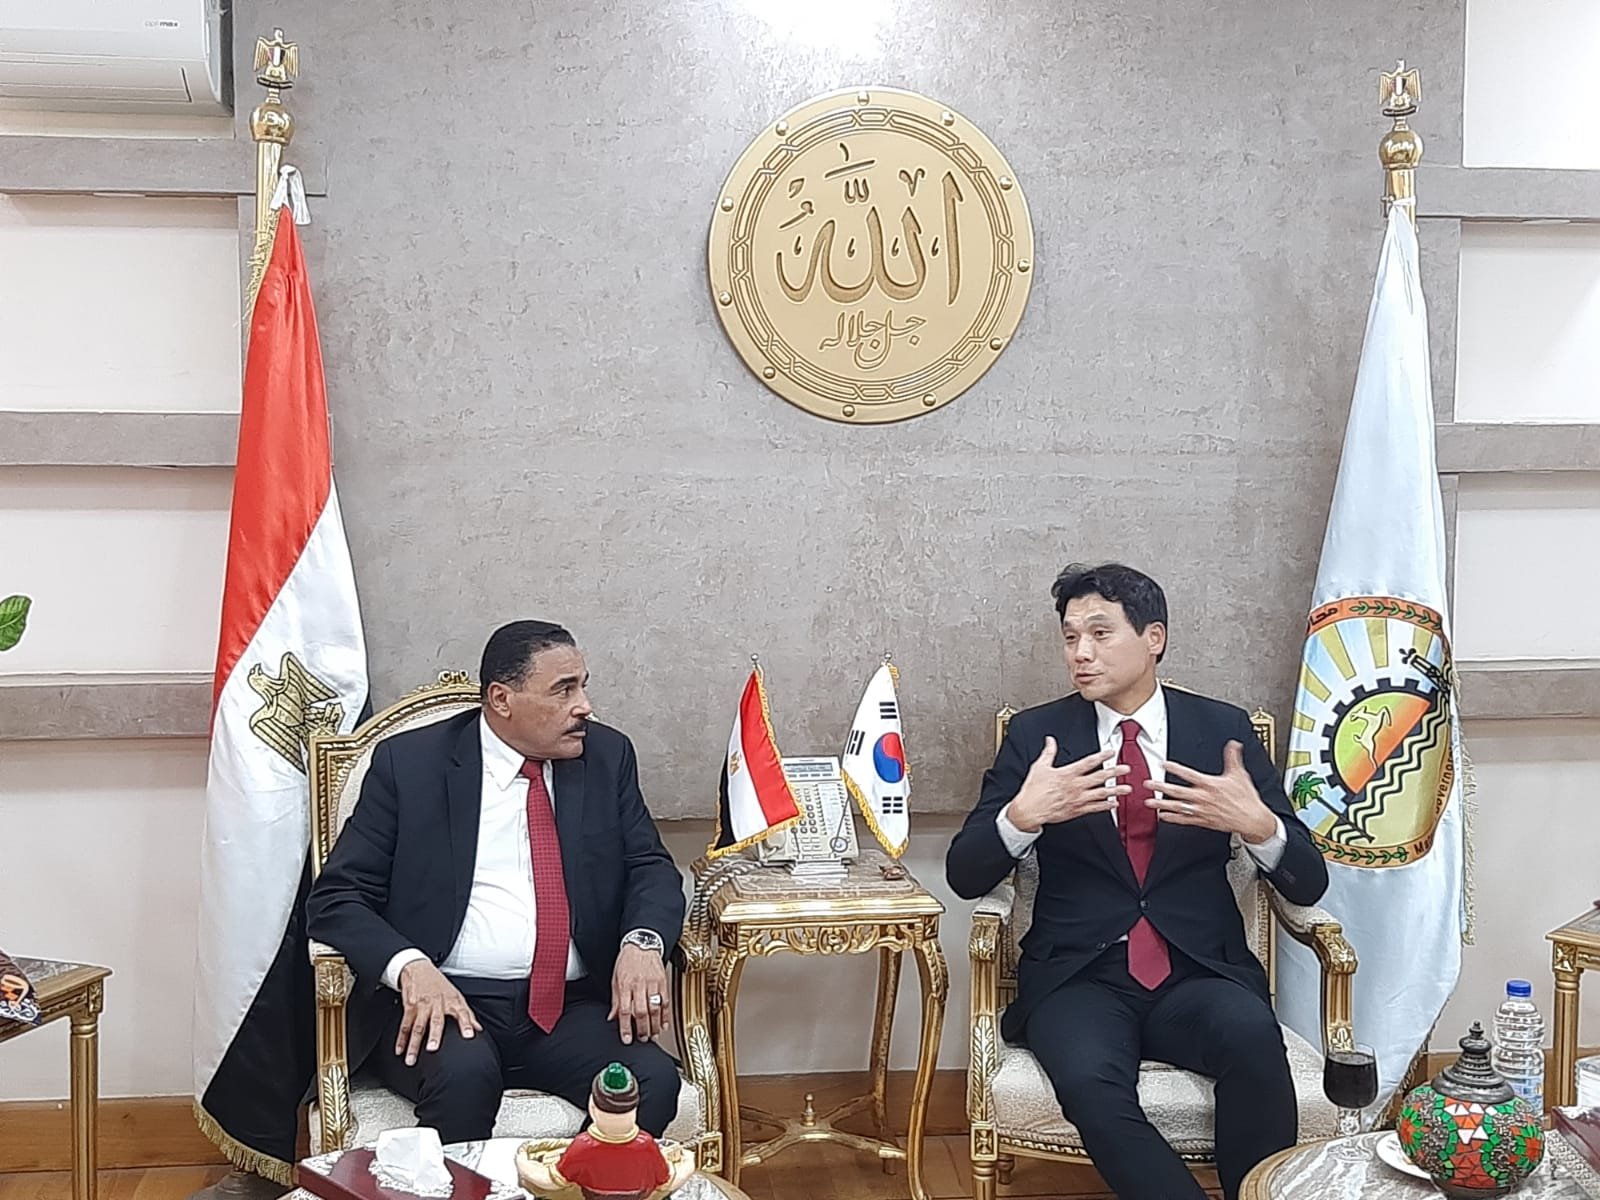 السفير الكوري يزور مرسى مطروح.. ويعد بمراجعة إرشادات السفر في سيوة